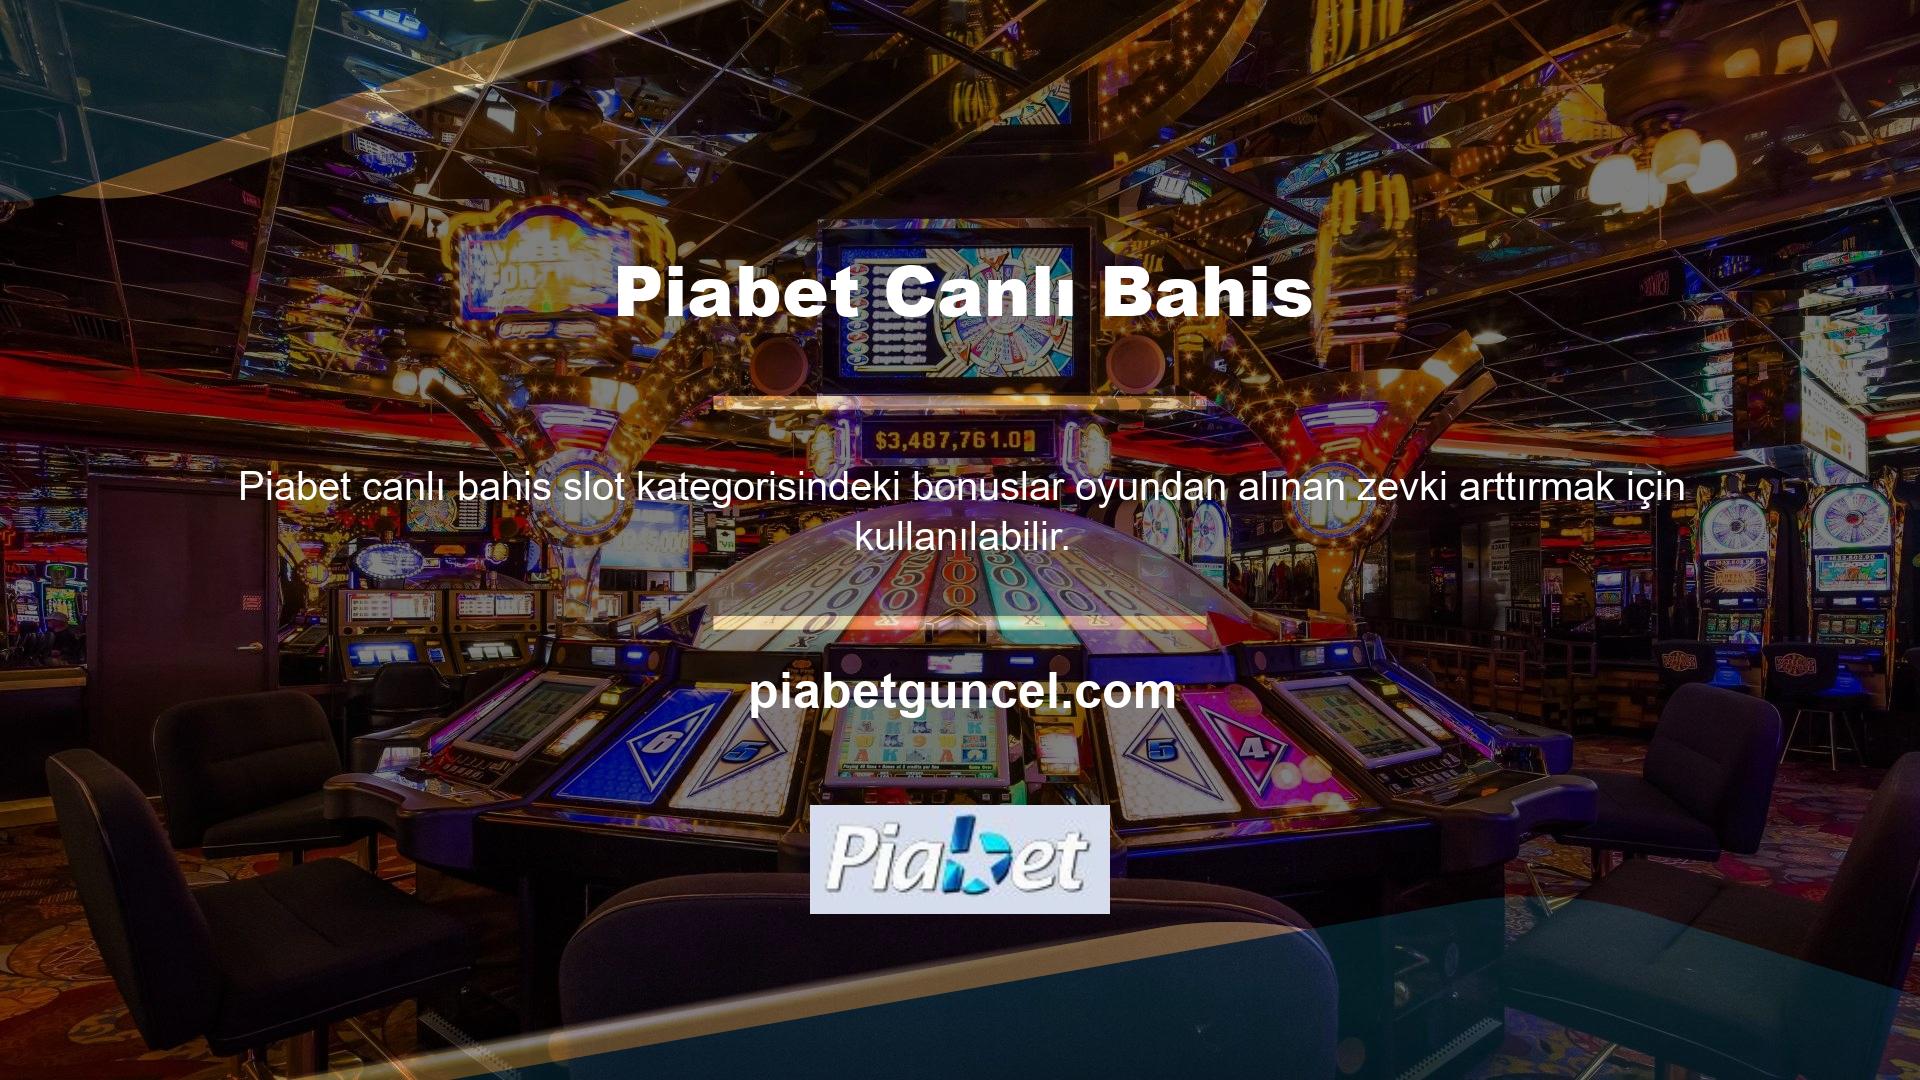 Çevrimiçi casino sitelerinin slot makinelerinde kullandığı bonuslar, oyun sağlayıcılara ve yeni sürüm programlarına göre verilir